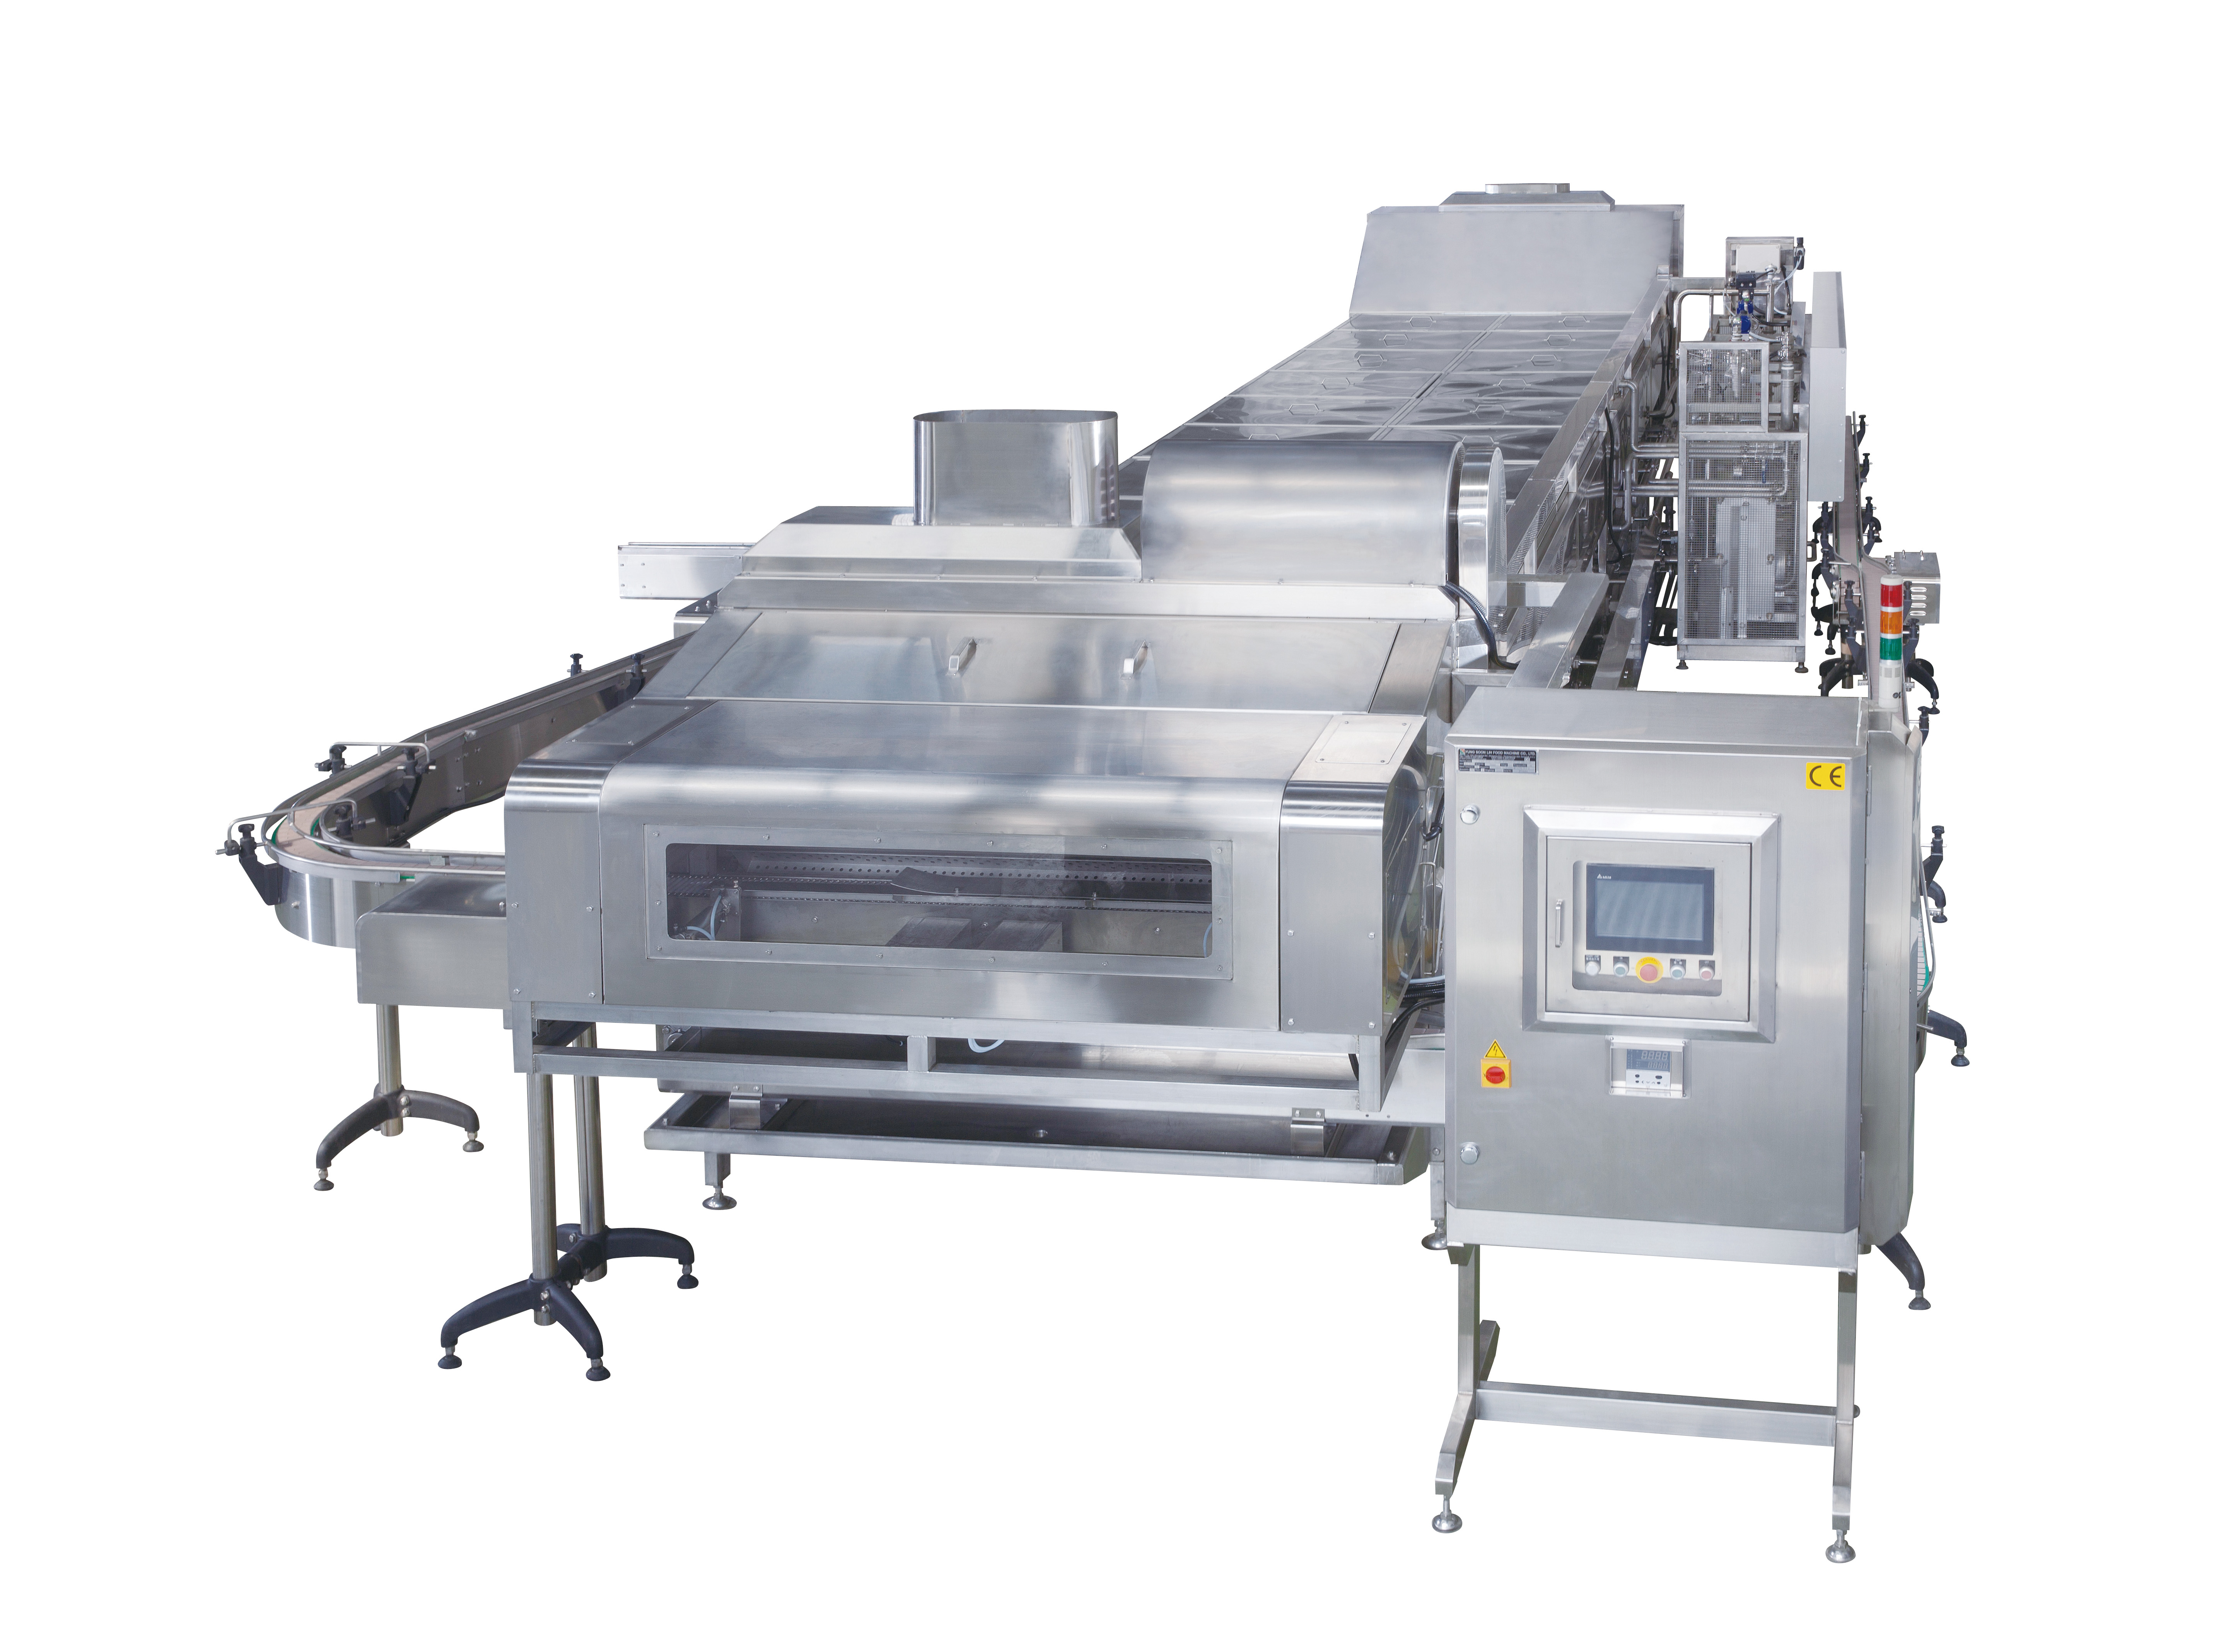 Pasteuriserings- och kylutrustning är en av maskinerna i Douhua produktionslinjen.